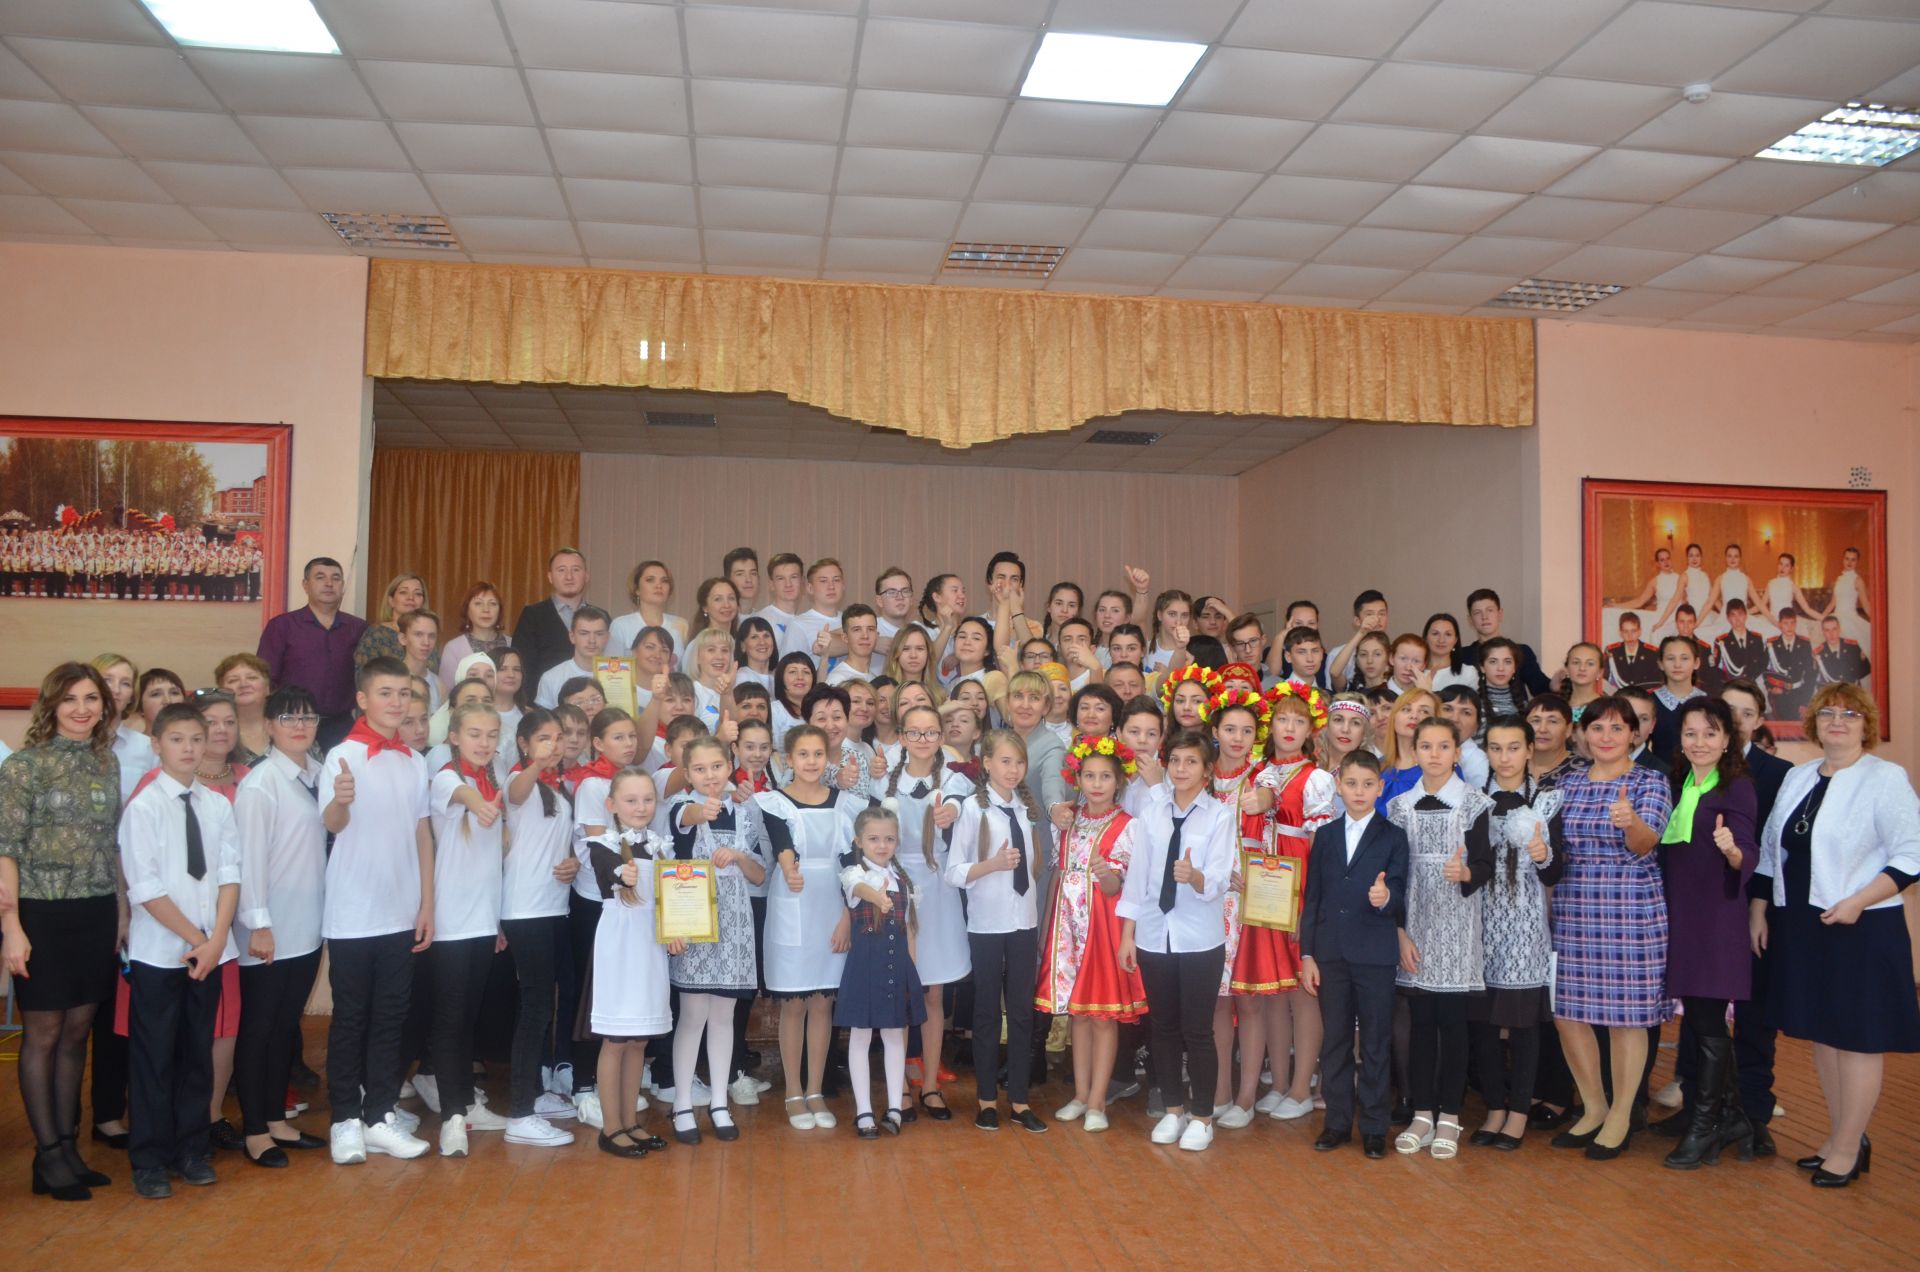 Ученики Девятернинской школы отмечены самым сплоченным коллективом на конкурсе родительских комитетов